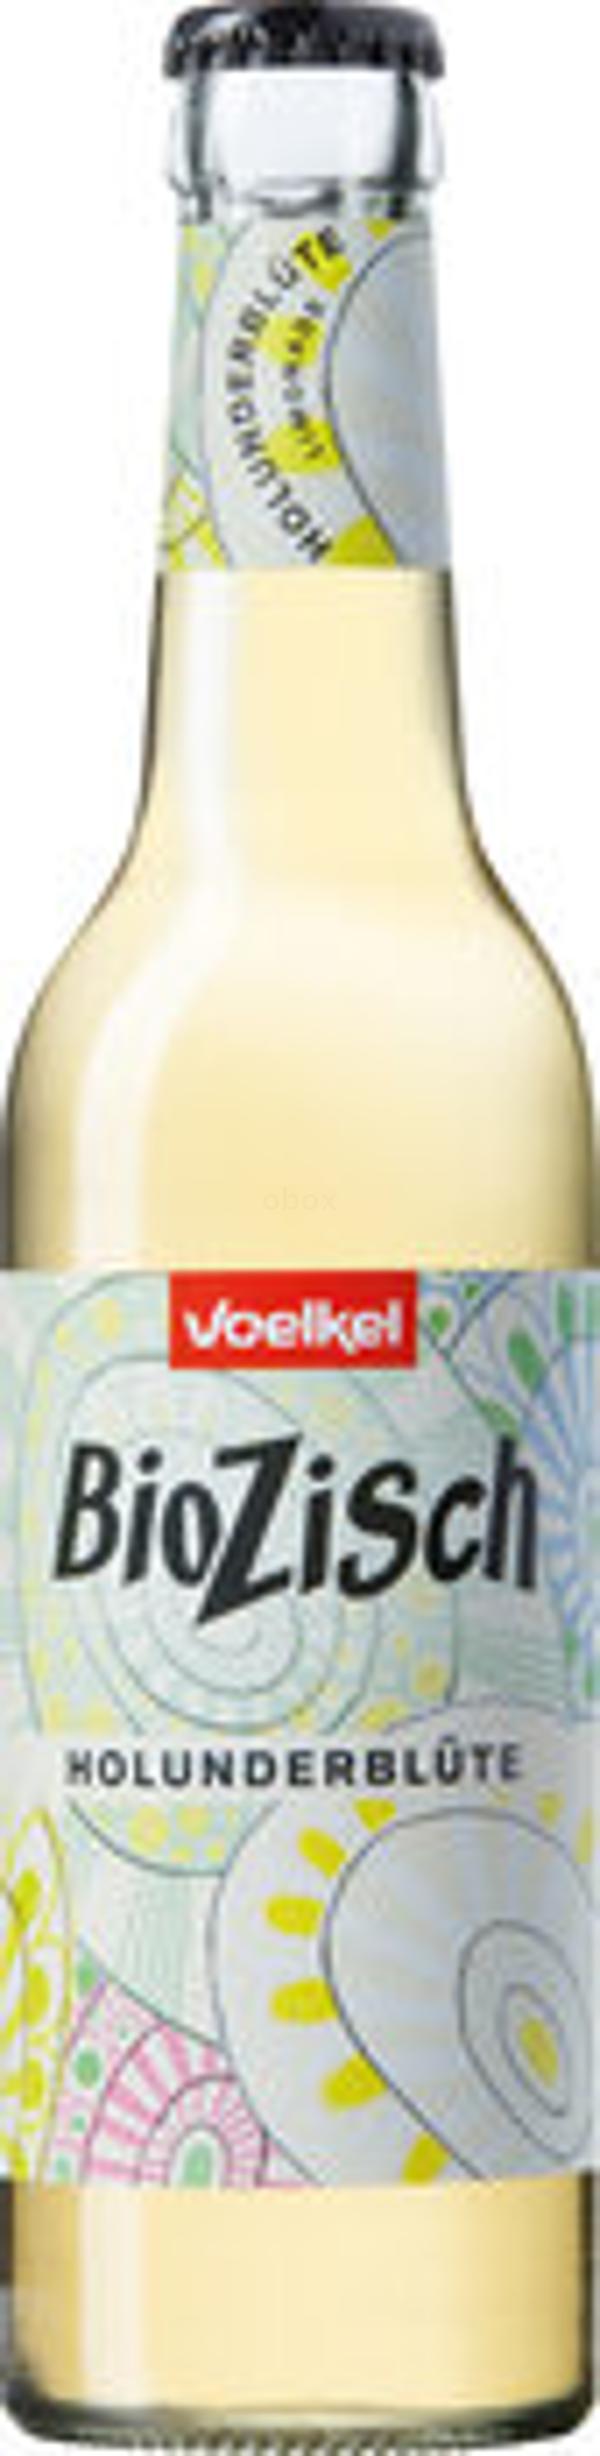 Produktfoto zu BioZisch Holunderblüte, 12x0,33 l